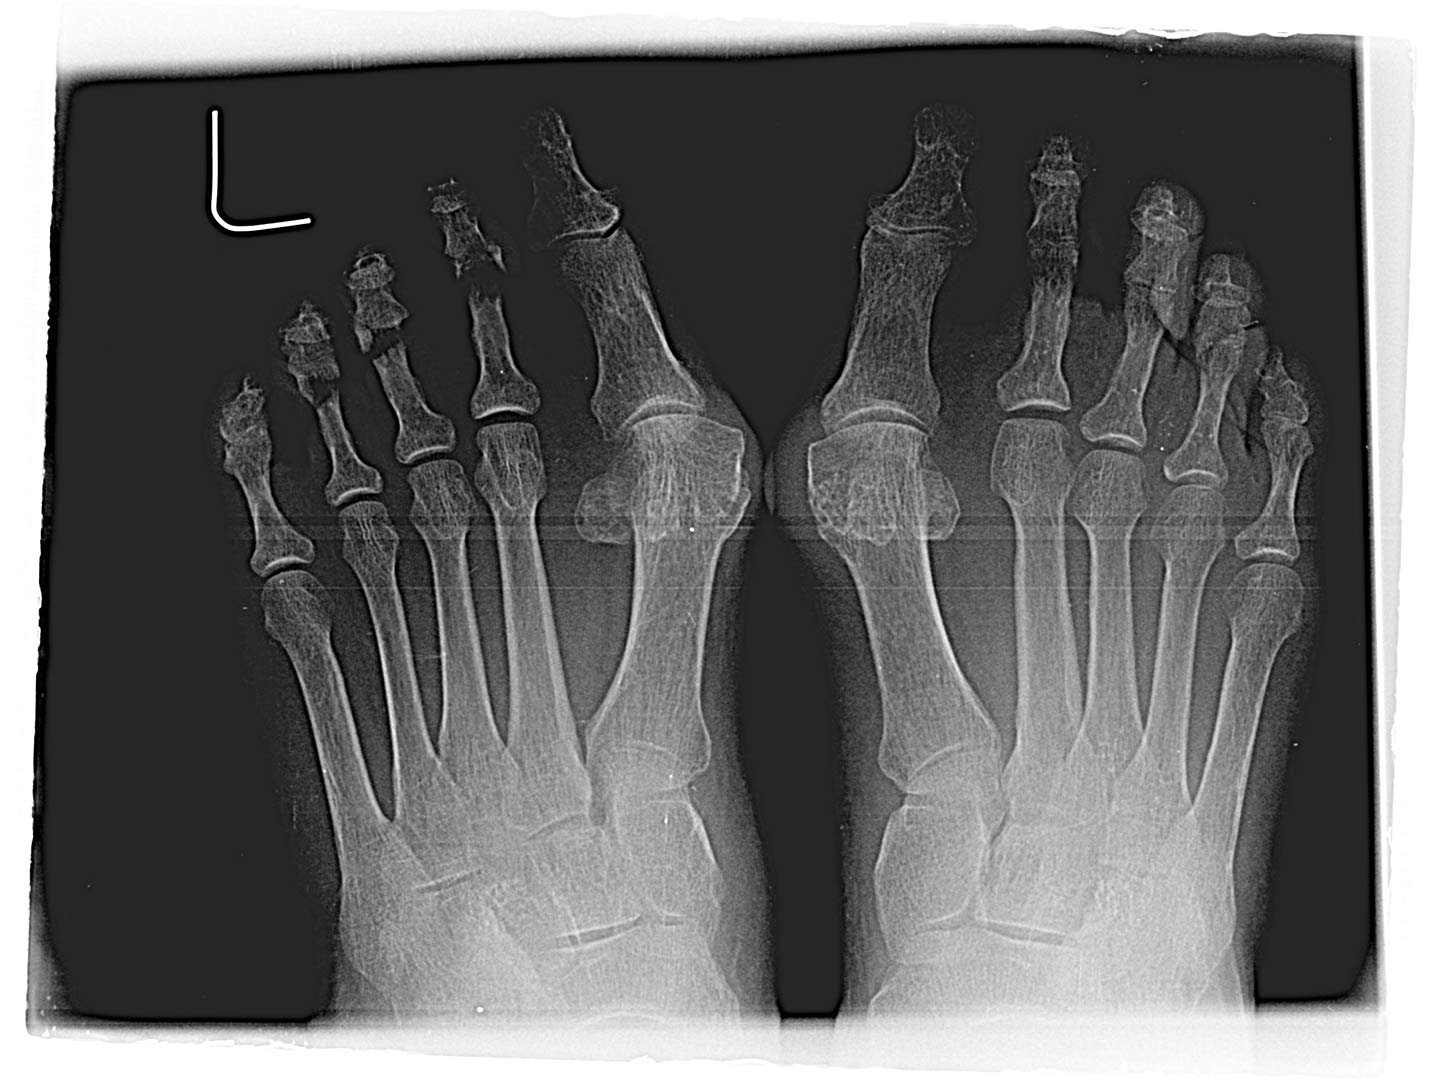 Maestro y Alejo Podología | Tratamiento quirúrgico de Juanetes y segundo dedo en martillo en ambos pies | Preoperatorio Radiografía 1